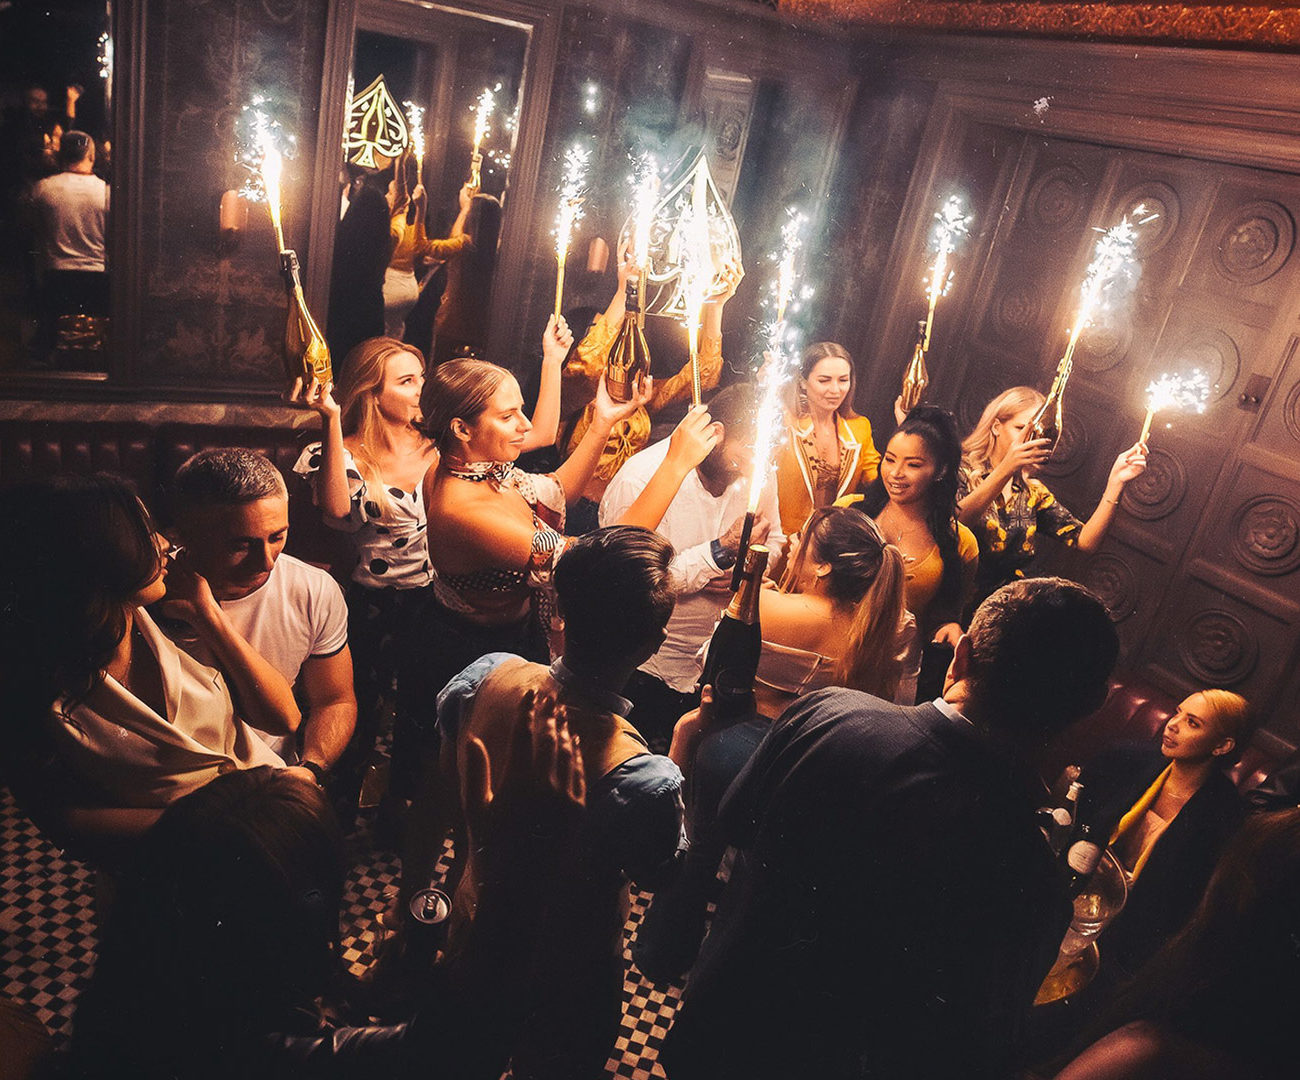 Night clubs in Dubai